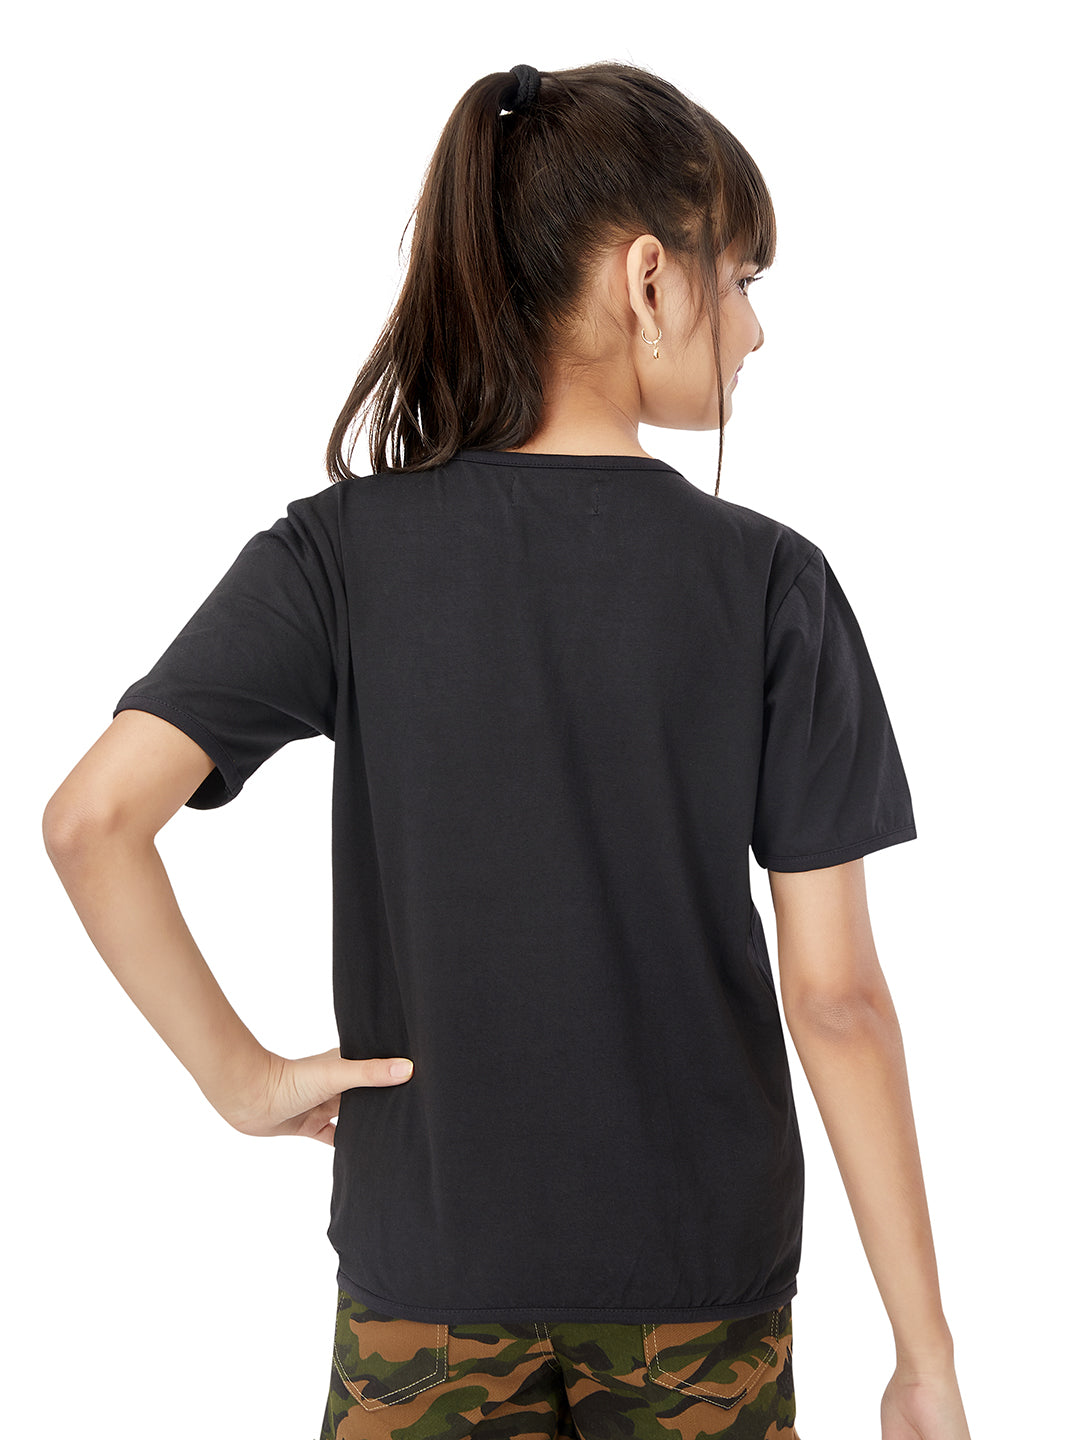 Olele® Solid Black T-shirt For Girls